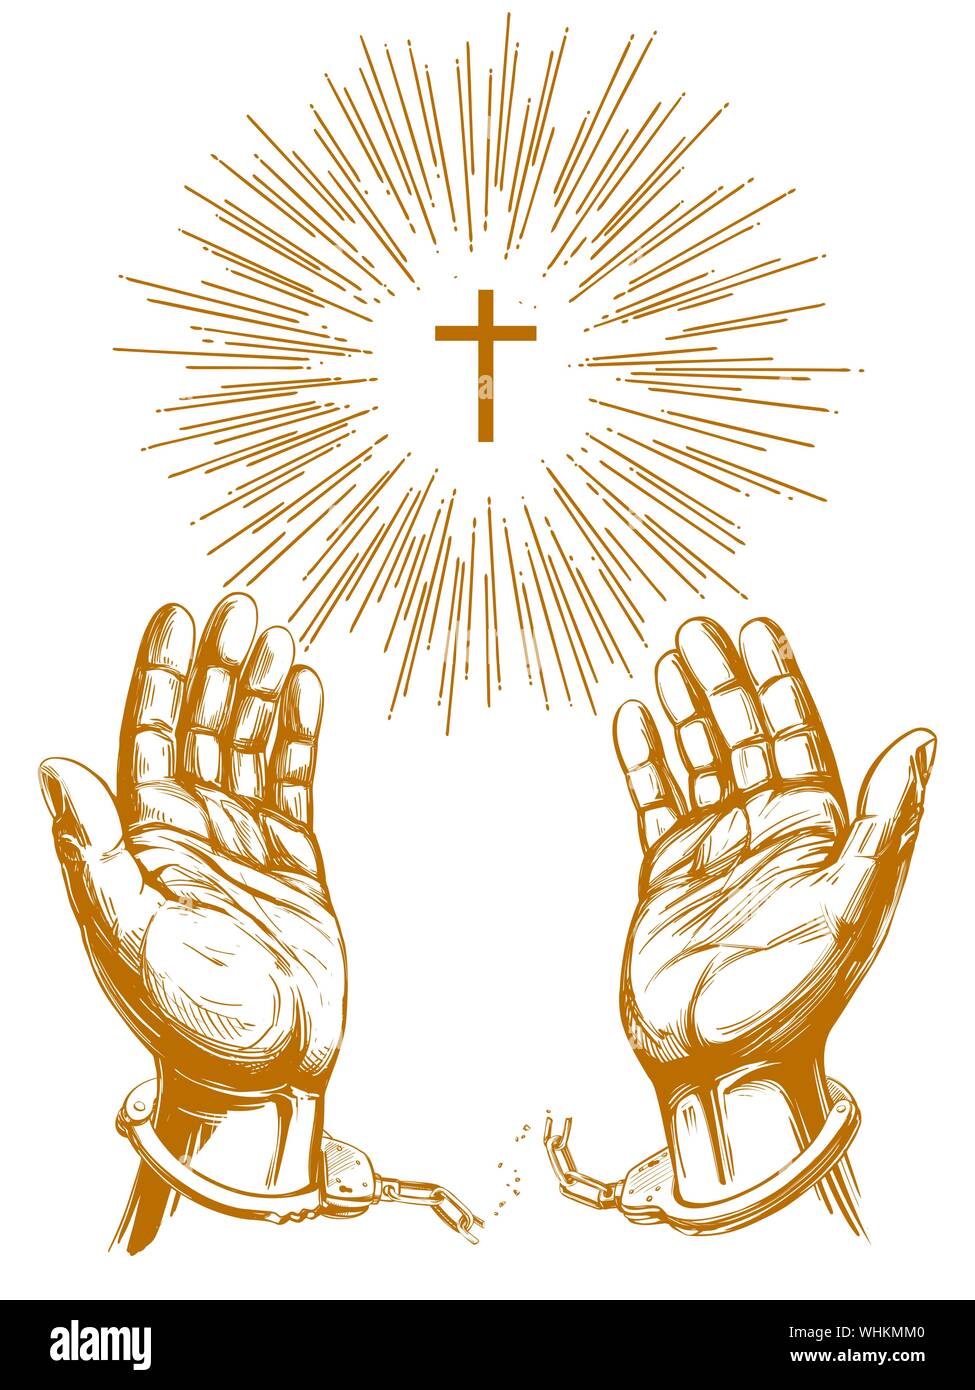 Christliches symbol Kreuz mit hellen Strahlen, die Hände brechen die Kette Handschellen, ein Symbol der Freiheit und der Vergebung das Symbol Hand gezeichnet Vektor-illustration sket Stock Vektor